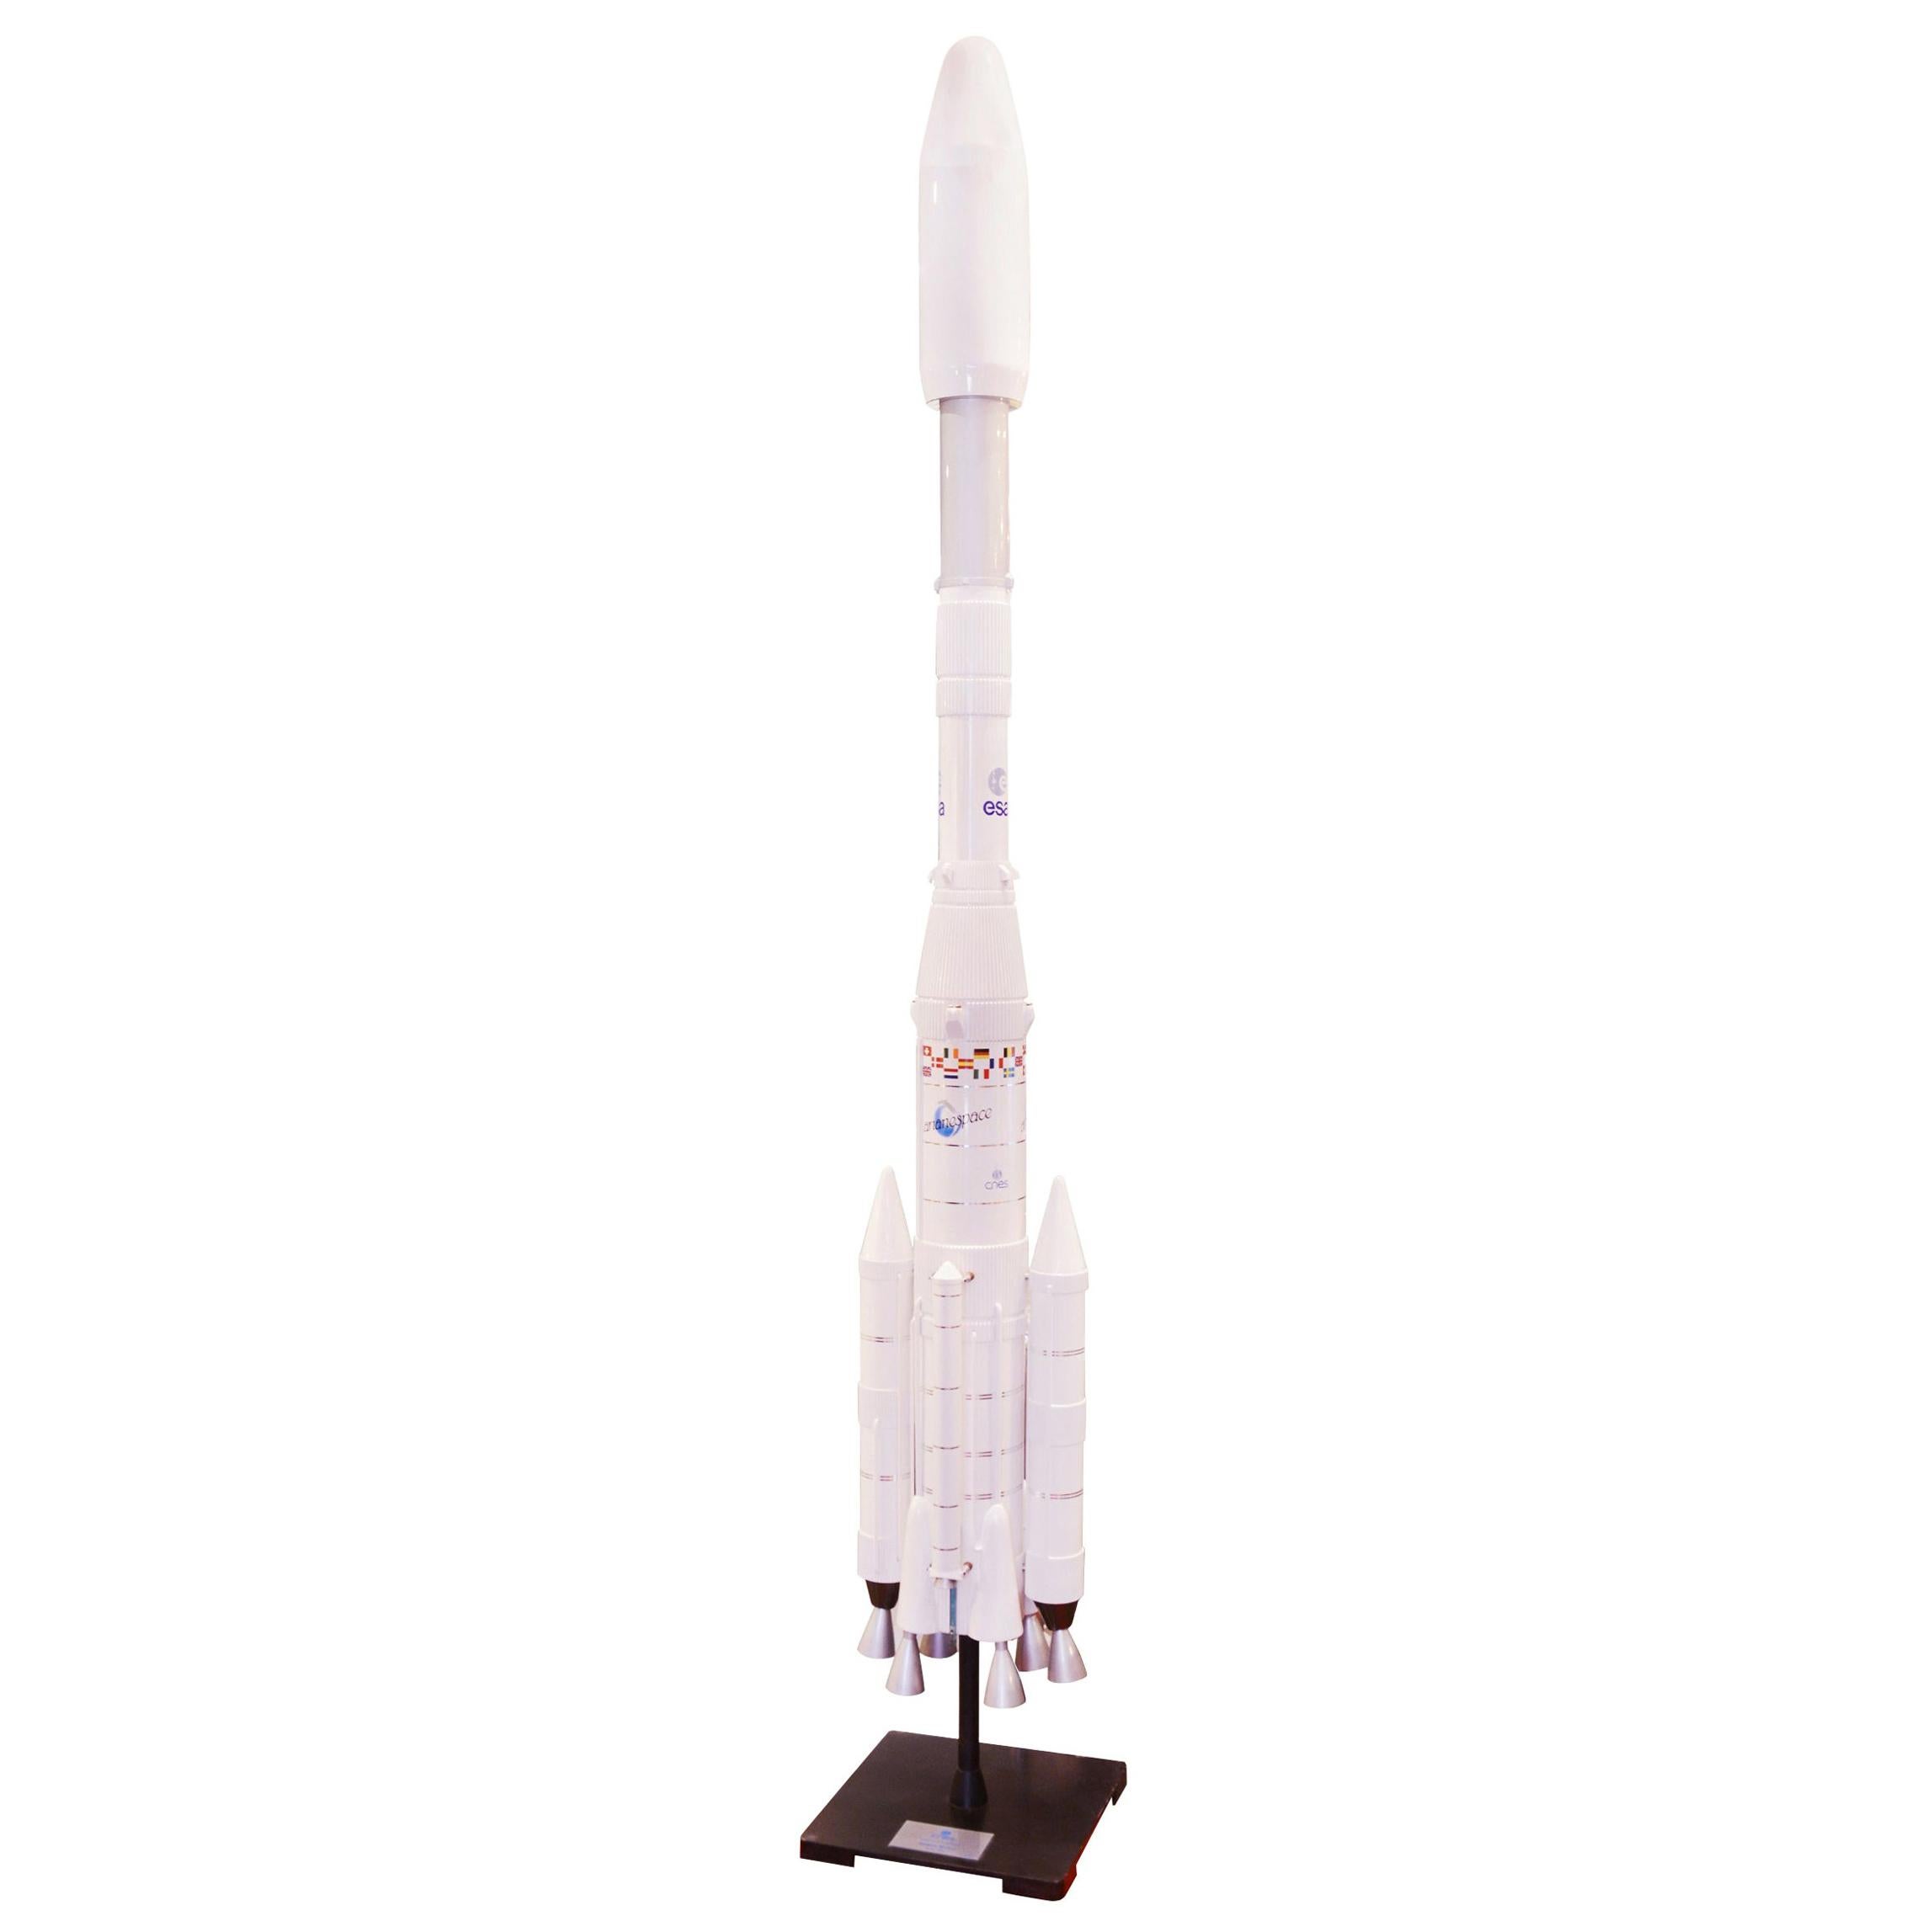 Modèle de fusée Ariane IV 44lp à l'échelle 1/20em